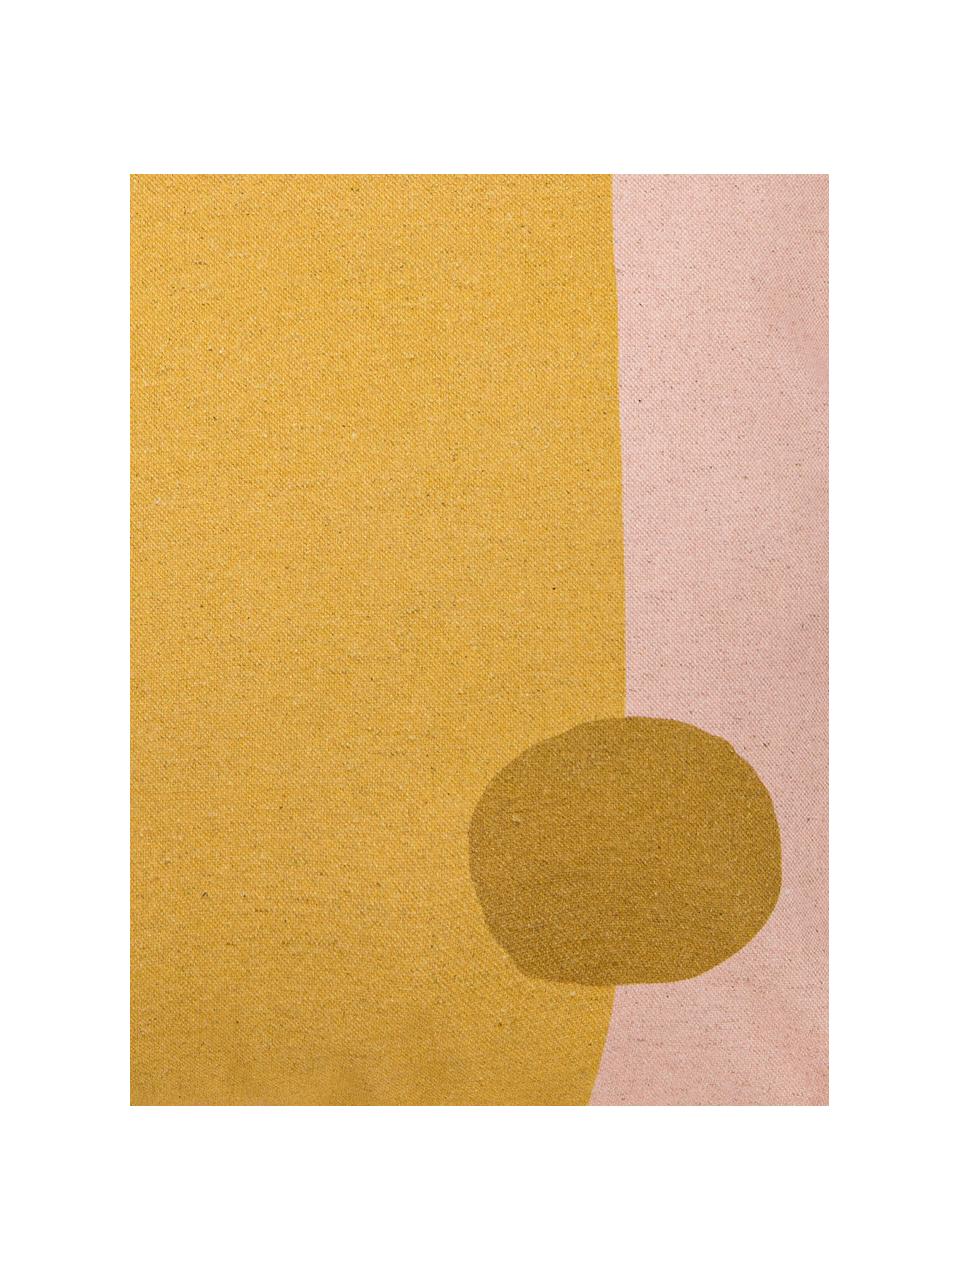 Kussenhoes Images met abstract motief, 85% katoen, 15% linnen, Geel, roze, lichtbruin, 50 x 50 cm